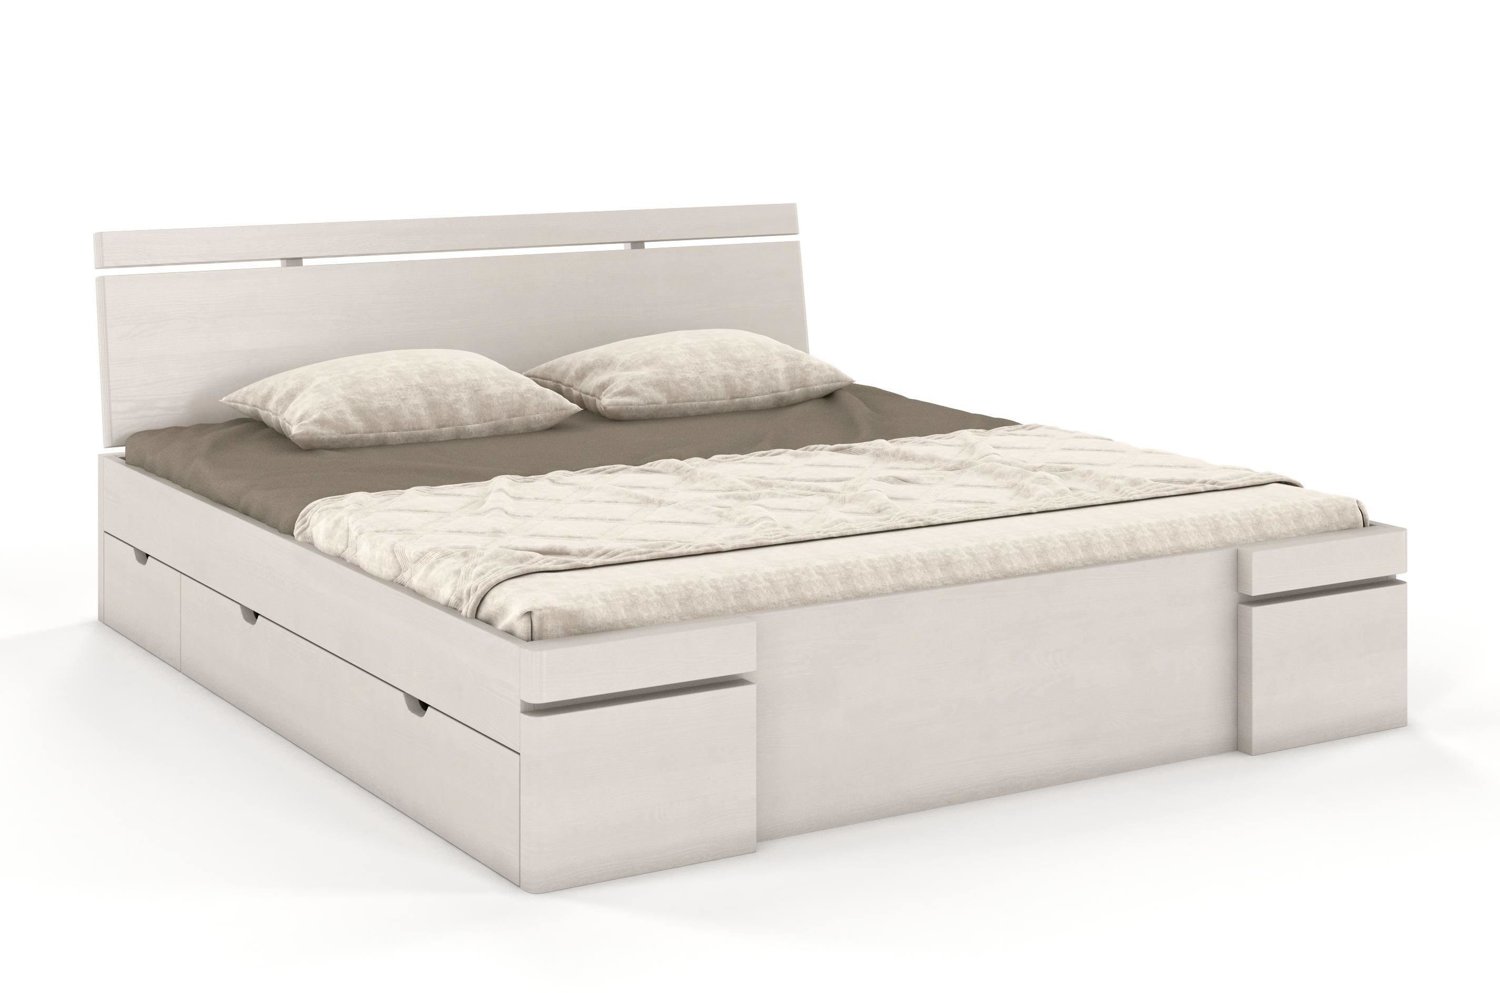 Łóżko drewniane sosnowe z szufladami Skandica SPARTA Maxi & DR / 140x200 cm, kolor biały